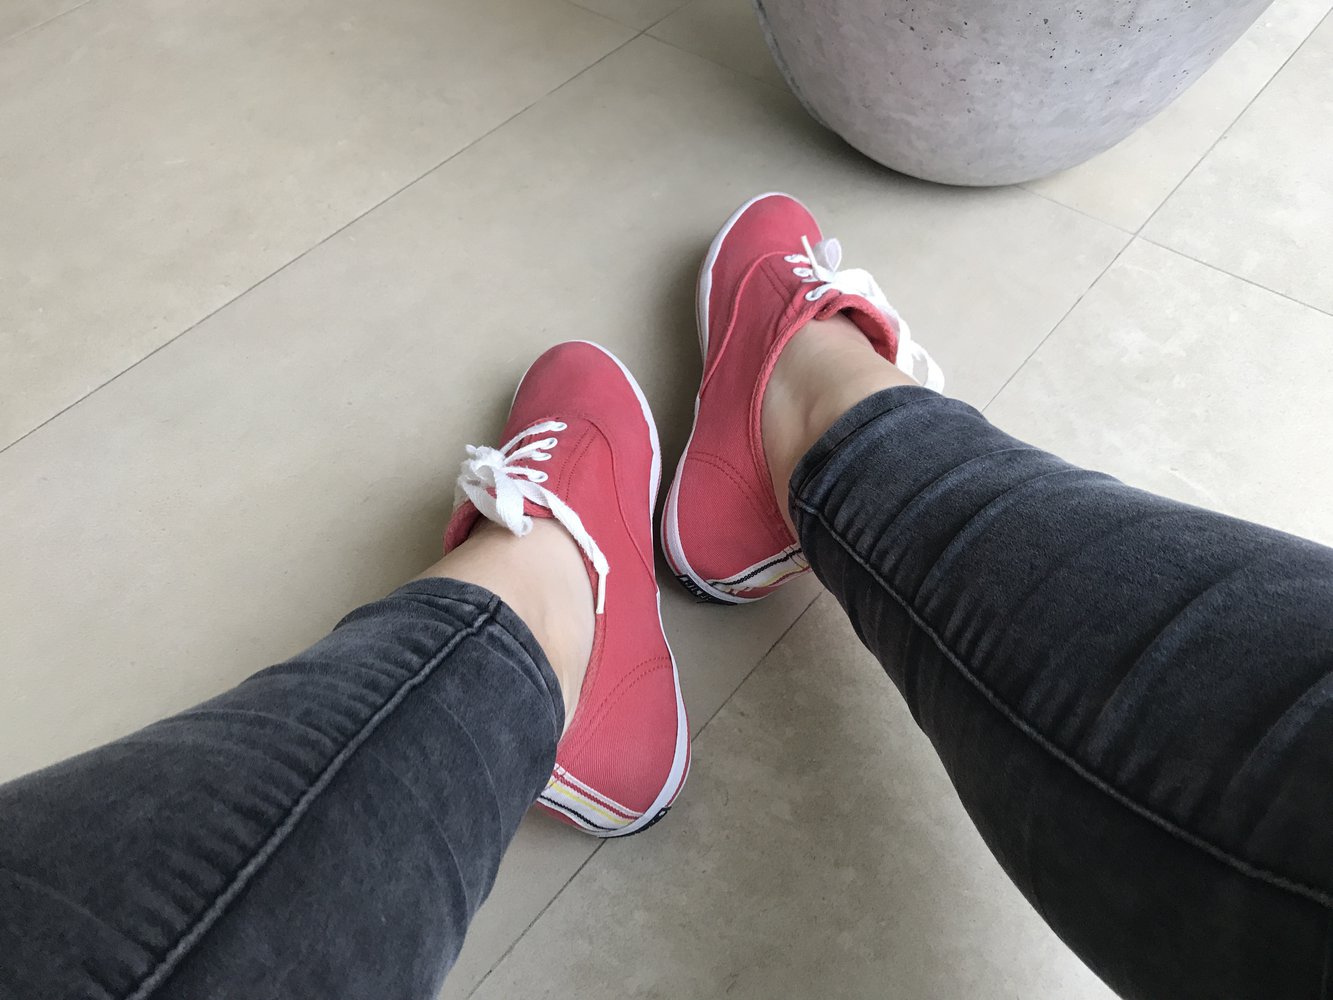 Schöne rote Sneakers von Tommy Hilfiger - wie neu